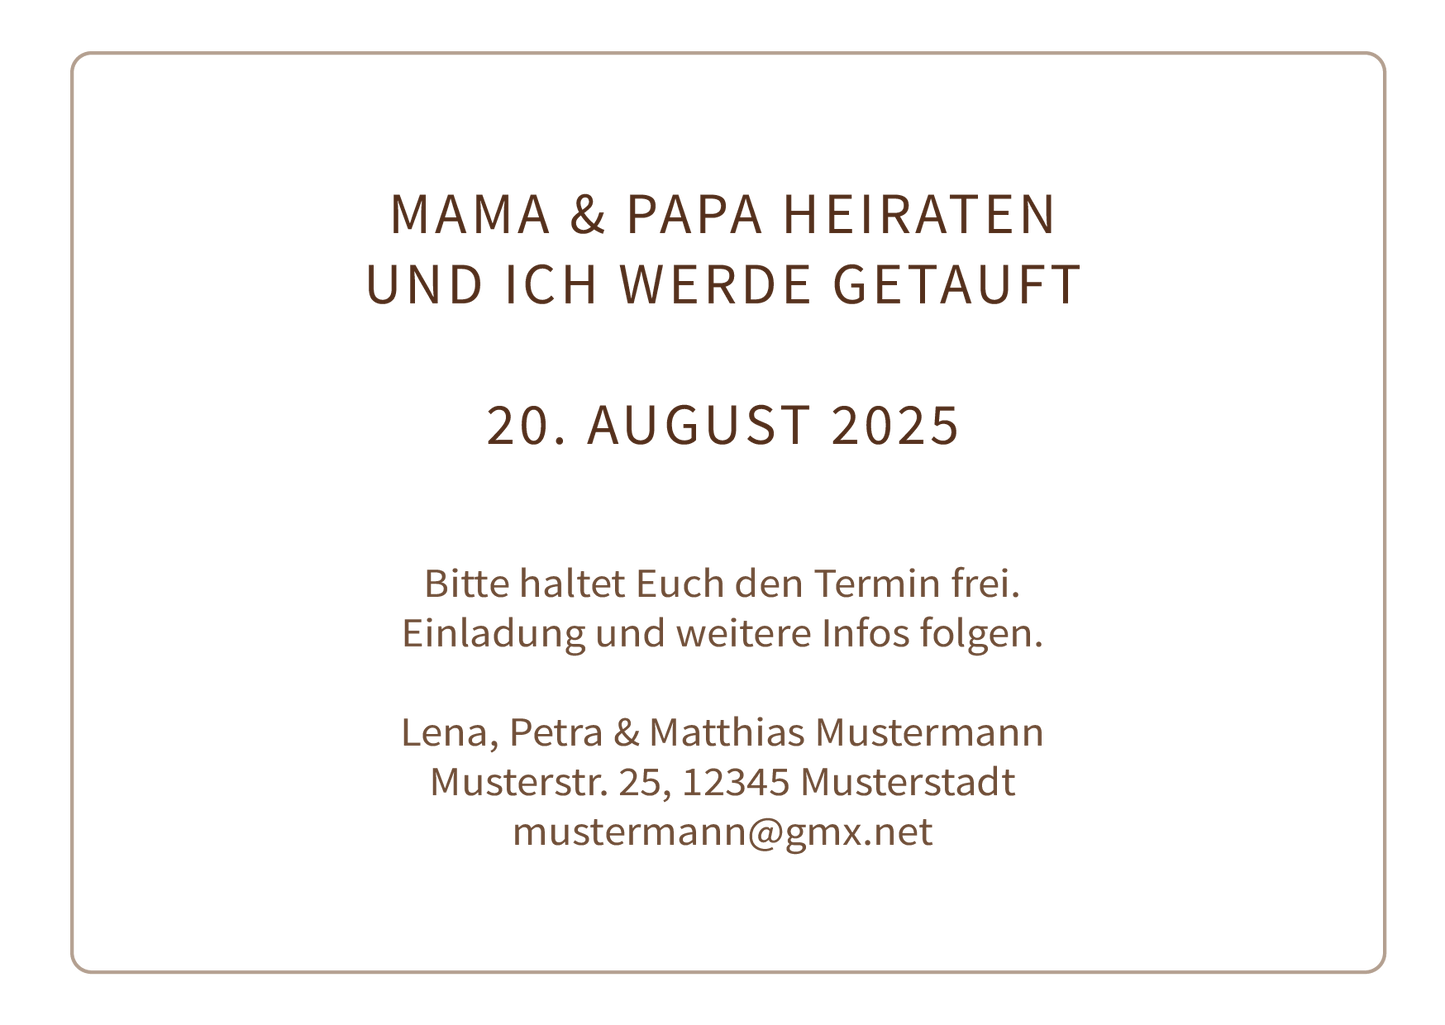 Save the Date Karten: Trauung & Taufe Individuelle Einladung